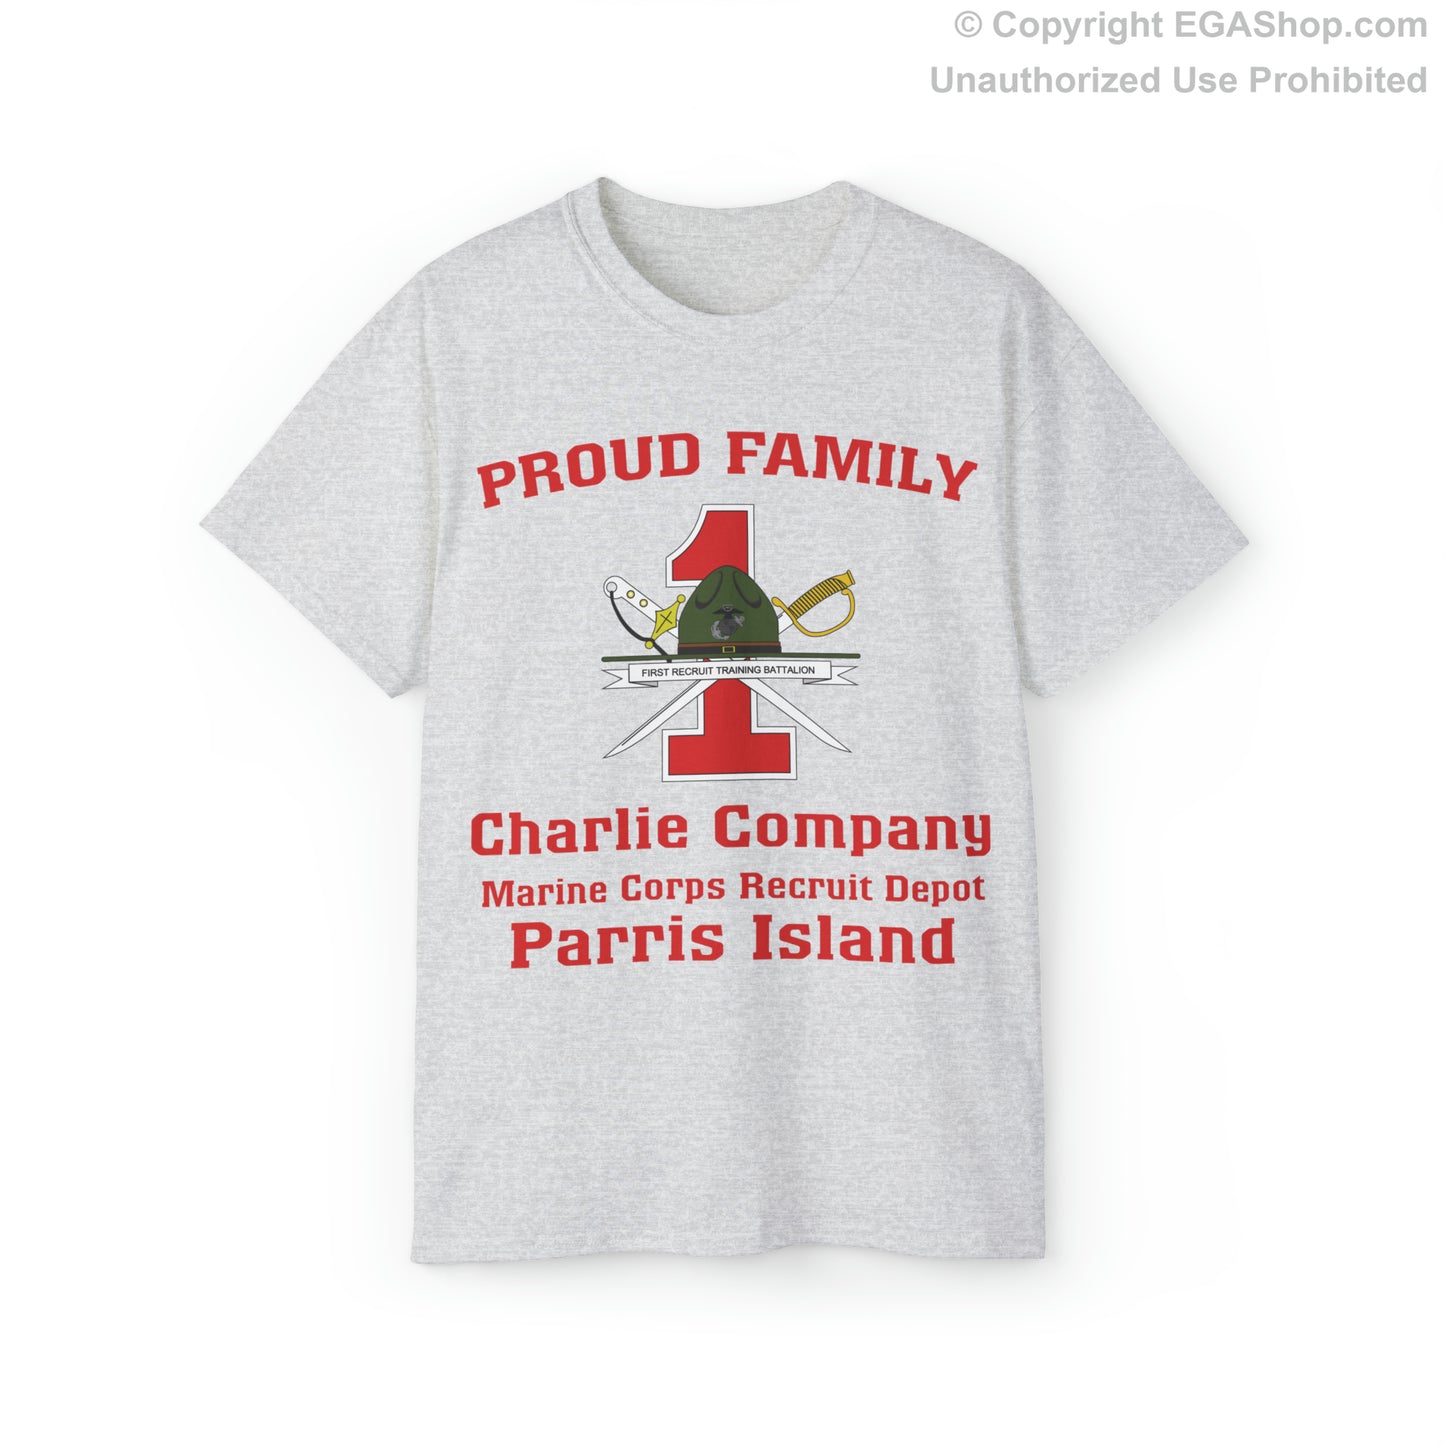 T-Shirt: Charlie Co. MCRD Parris Island (1st Battalion Crest)